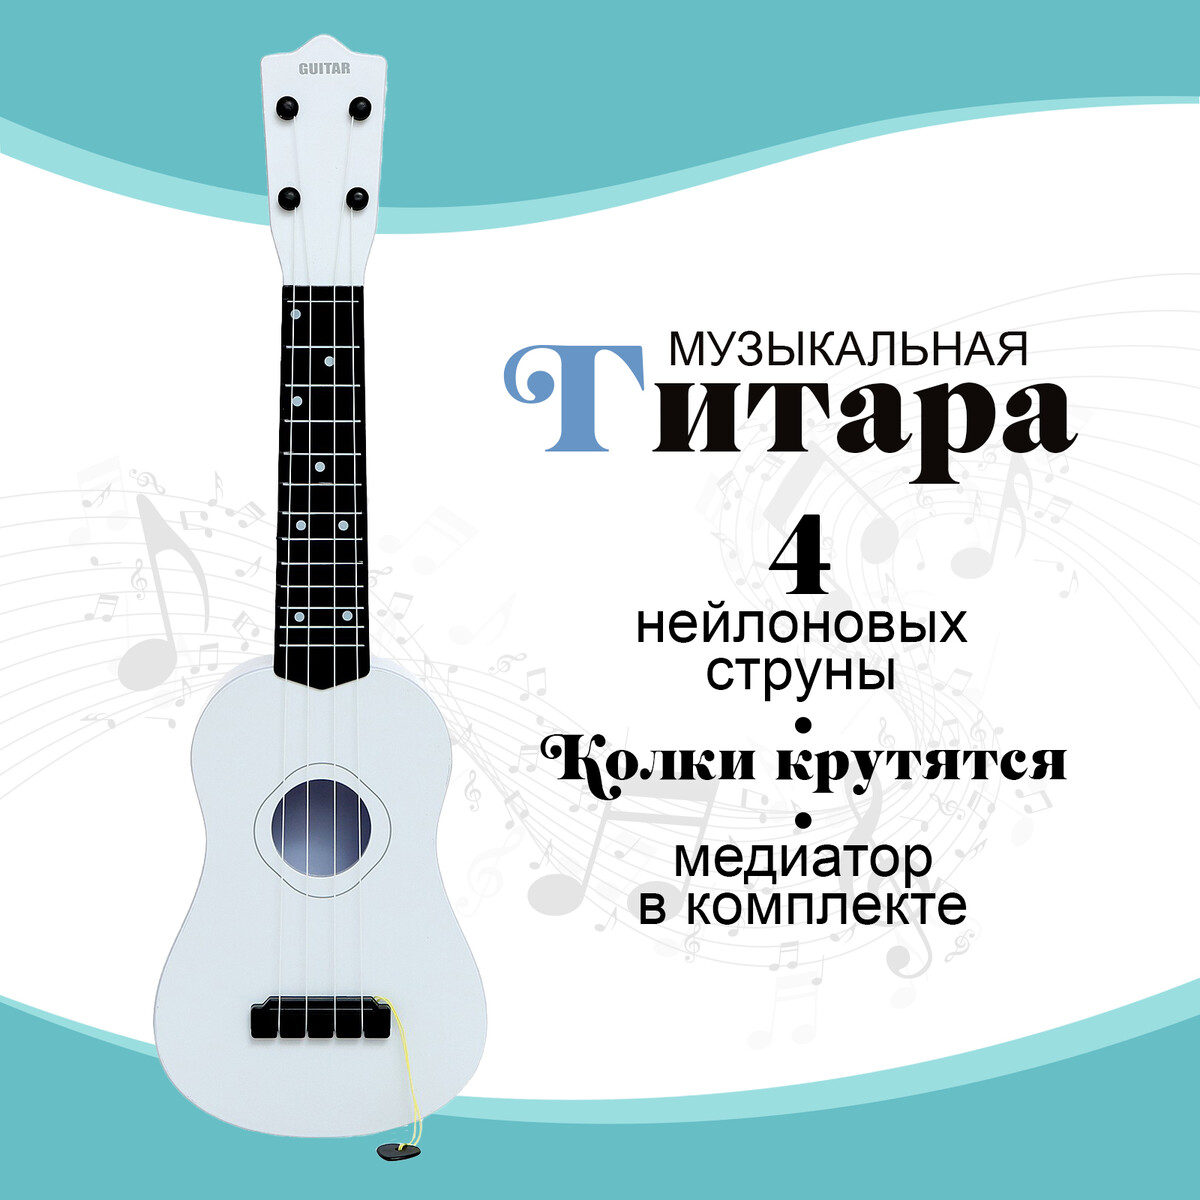 Игрушка музыкальная - гитара игрушка музыкальная гитара